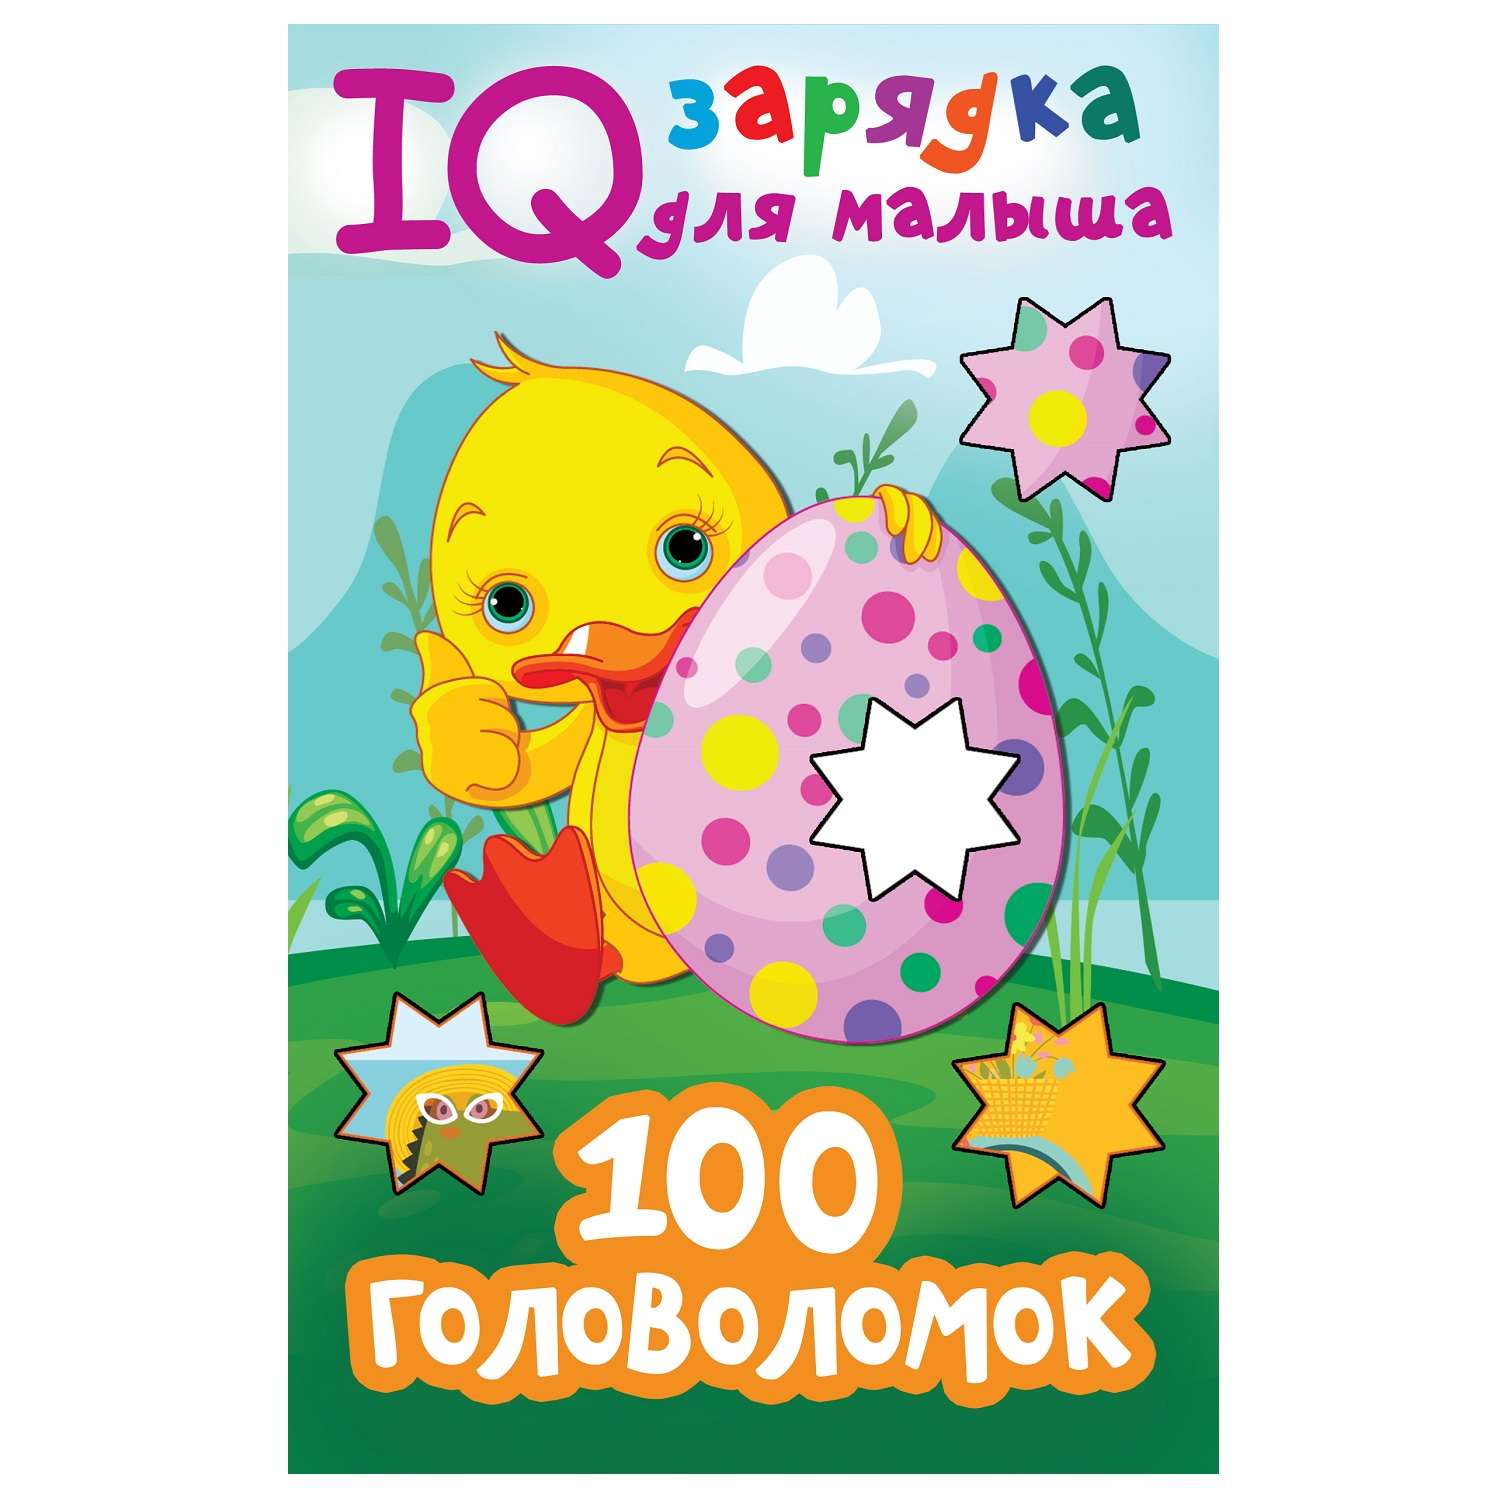 Книга АСТ IQ зарядка для малыша 100 головоломок - фото 1